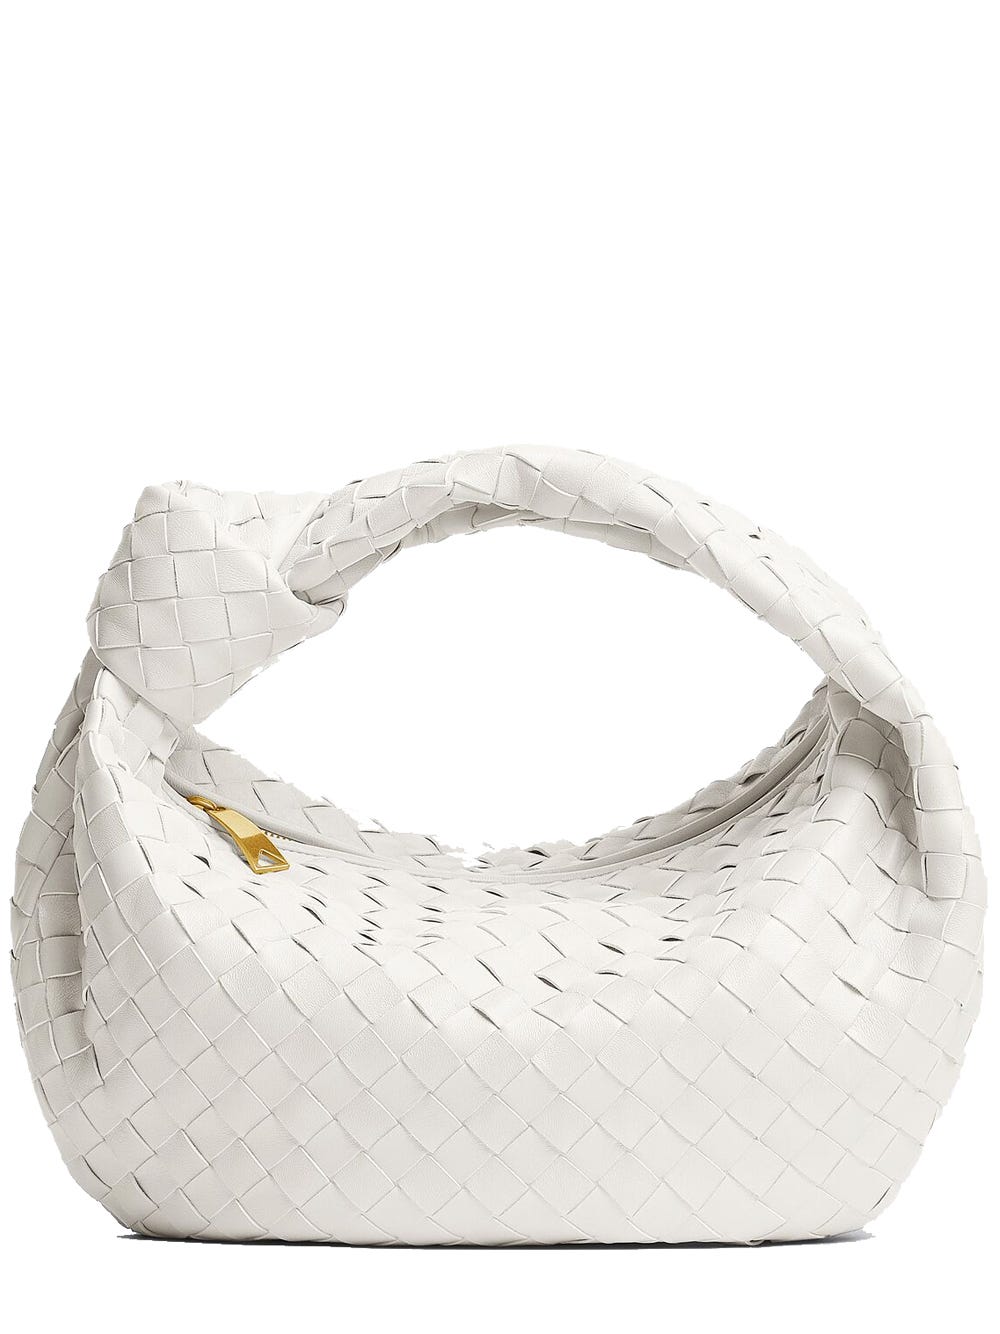 Bottega Veneta White Leather Mini Bag With Woven Pattern